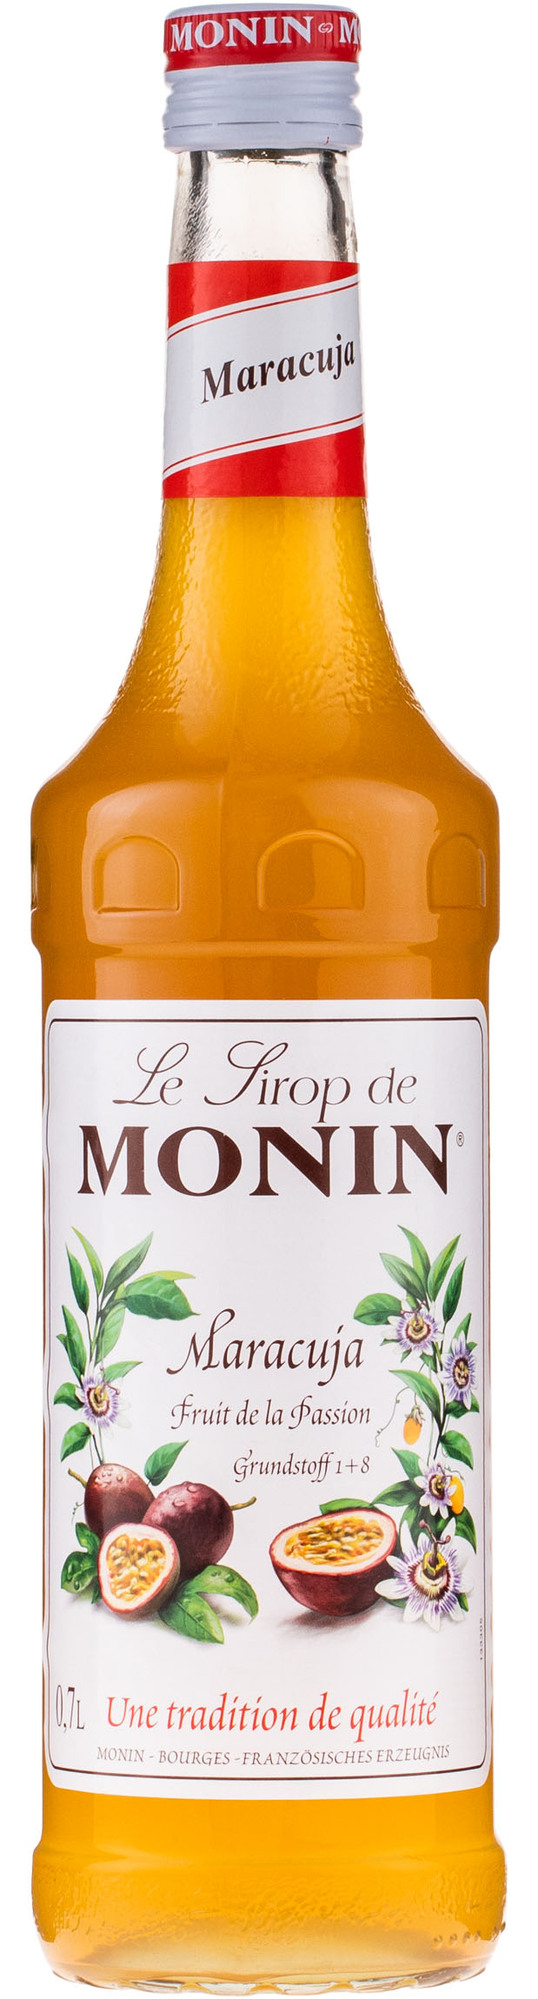 Monin Sirup Vanille, 1,0L, 3er Pack